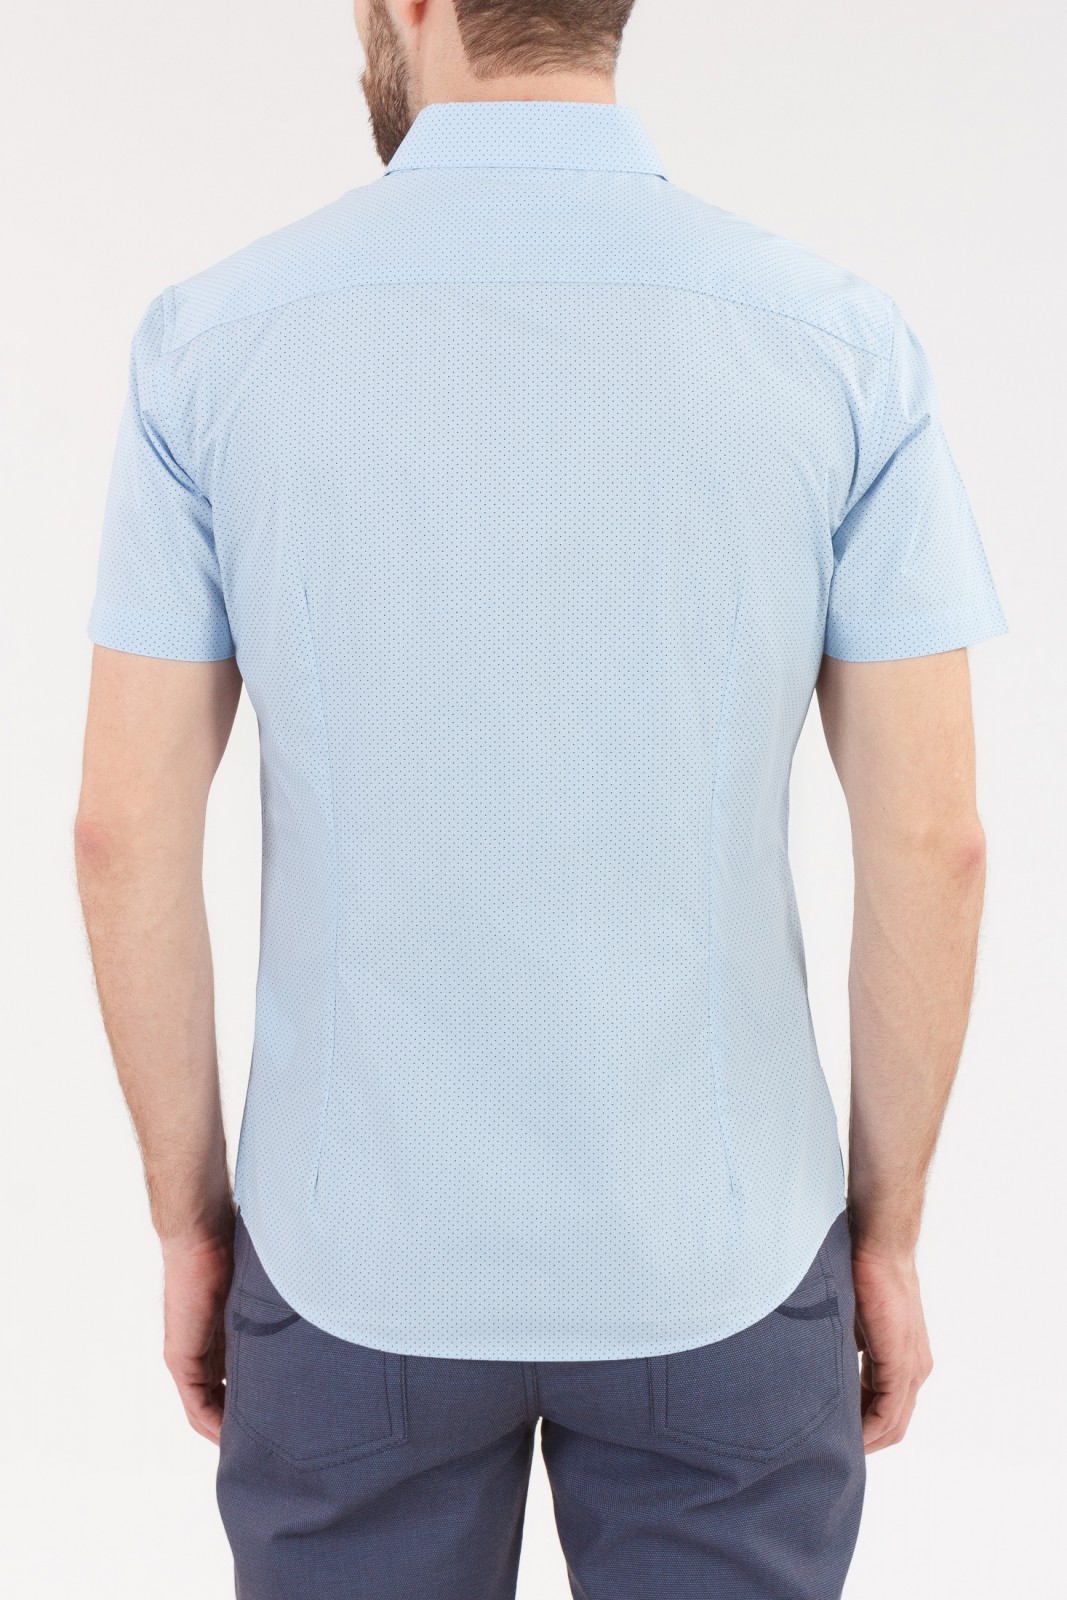 Рубашка с  короткими рукавами zolla 010222259052, цвет светло-голубой, размер S - фото 2